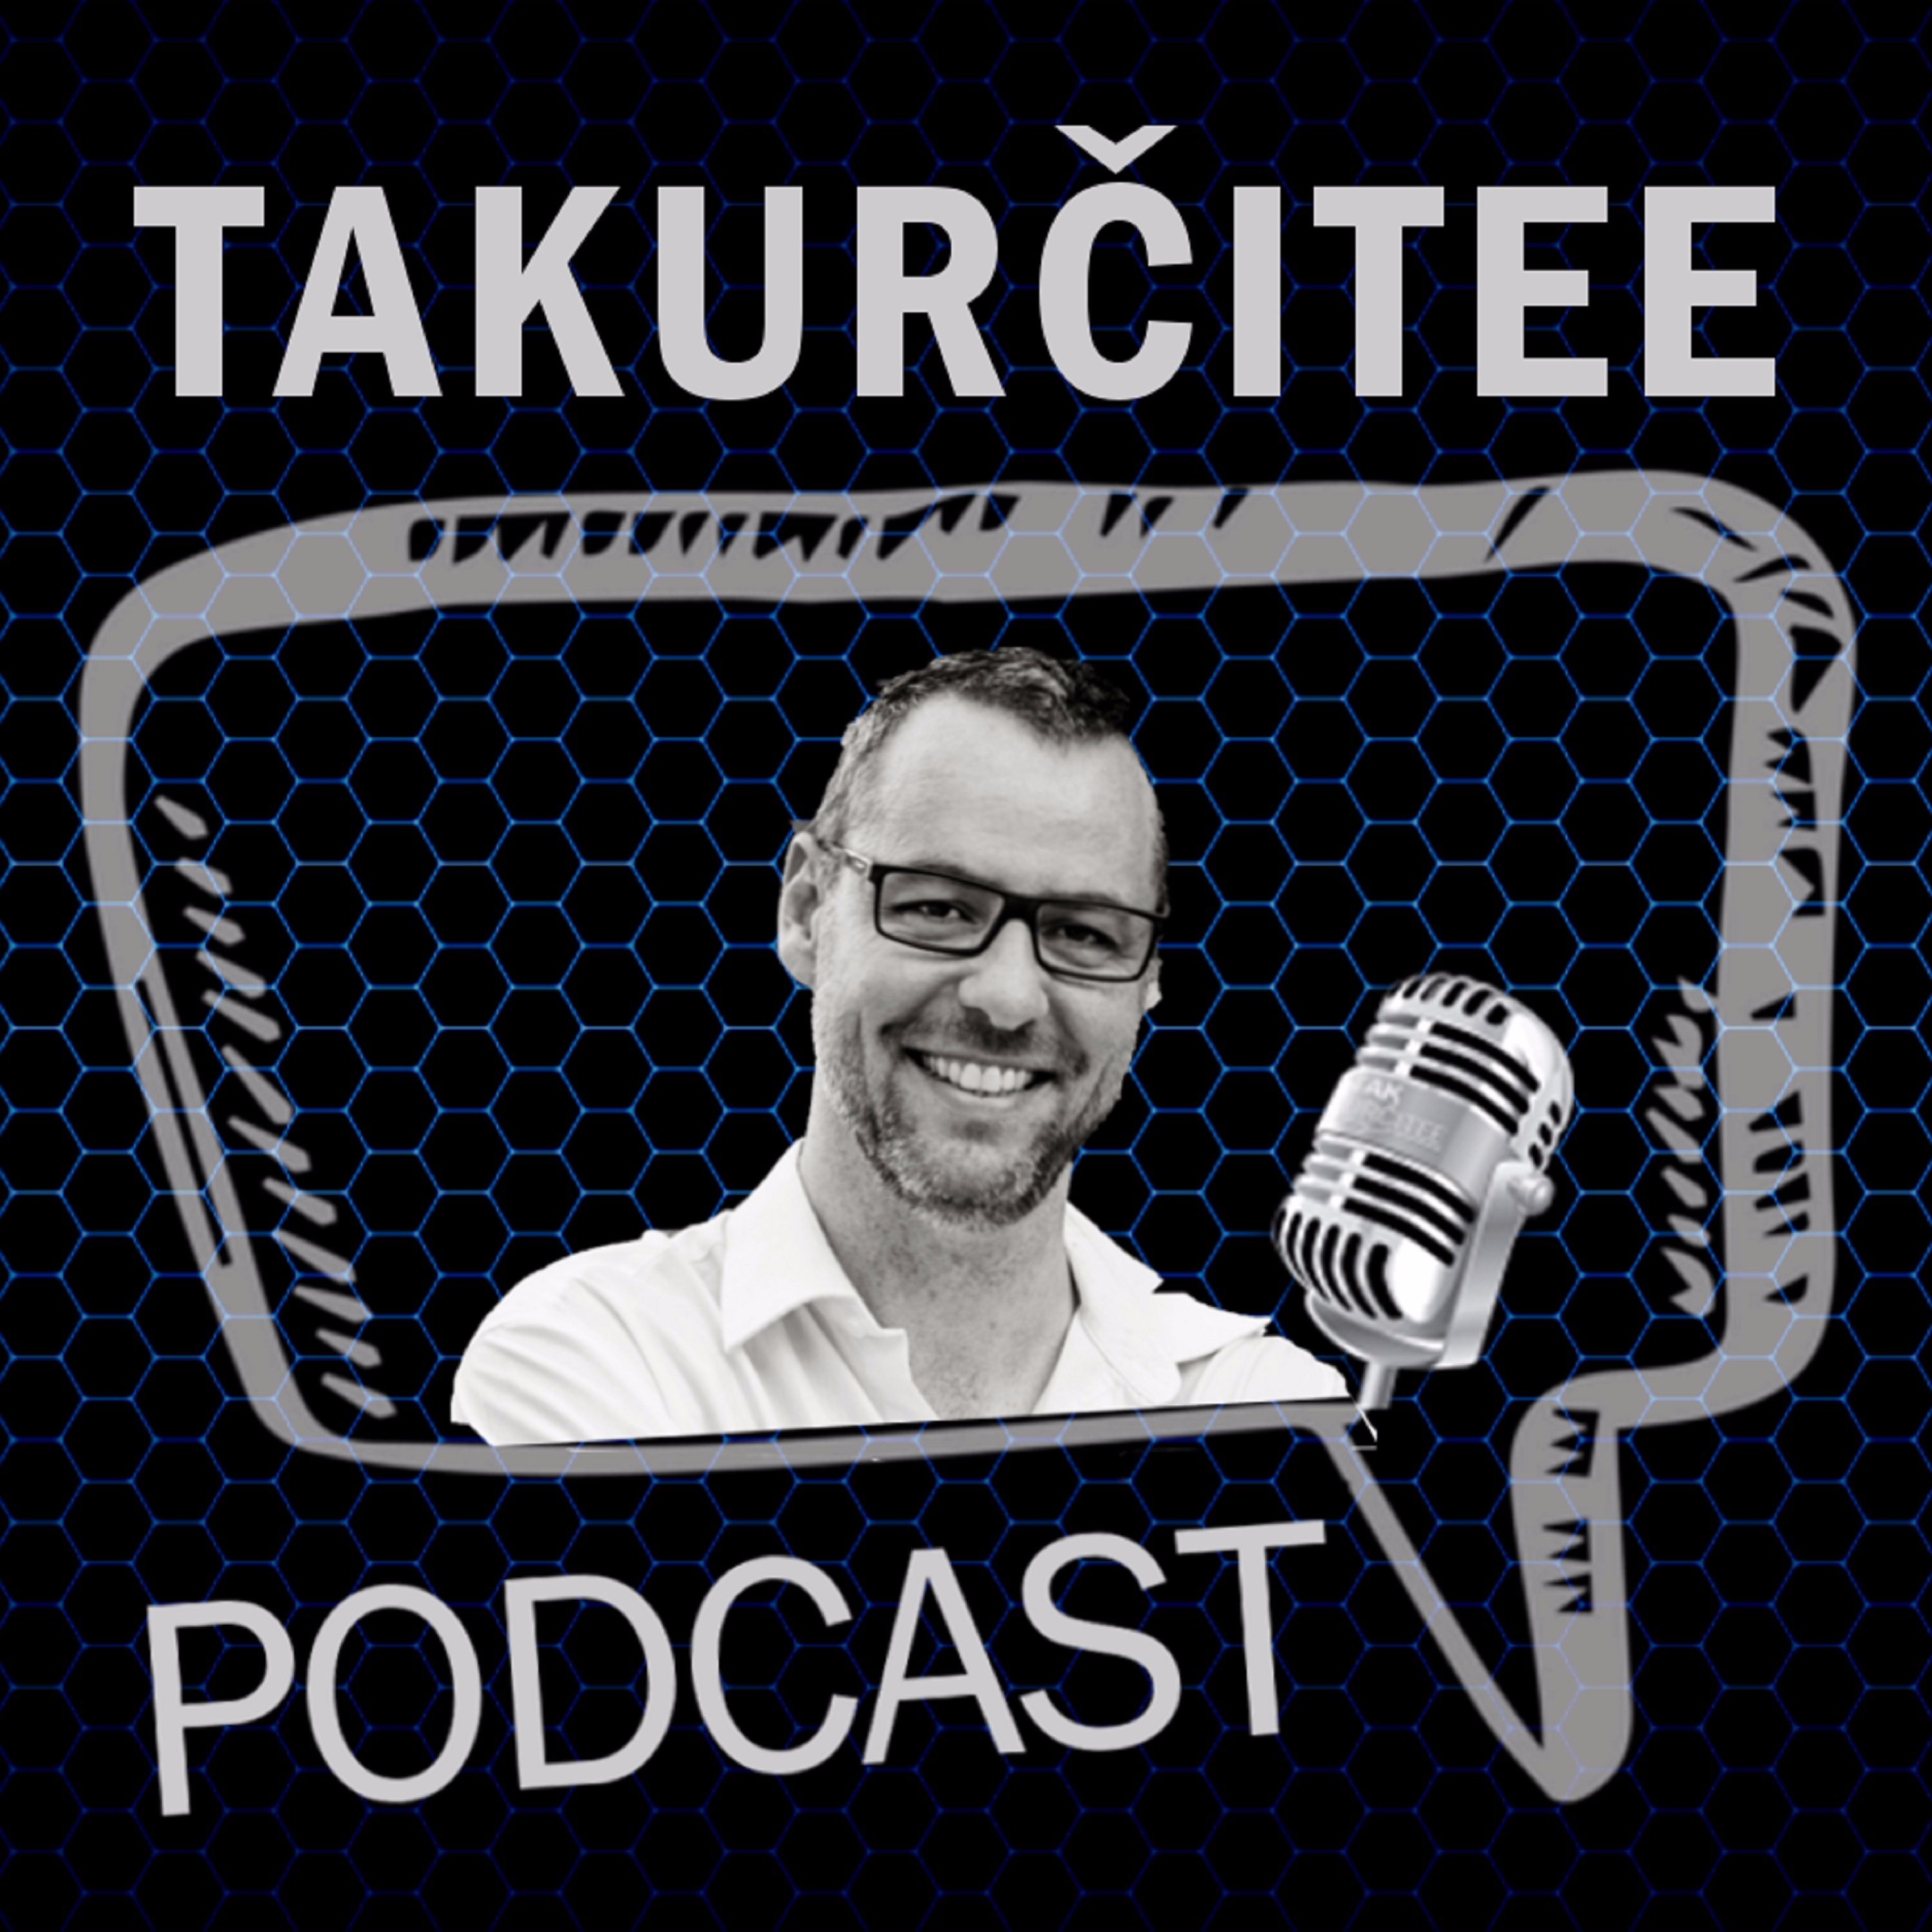 TakUrčitee Podcast, Ep. 27: Pohárová Európa, pohárové Slovensko